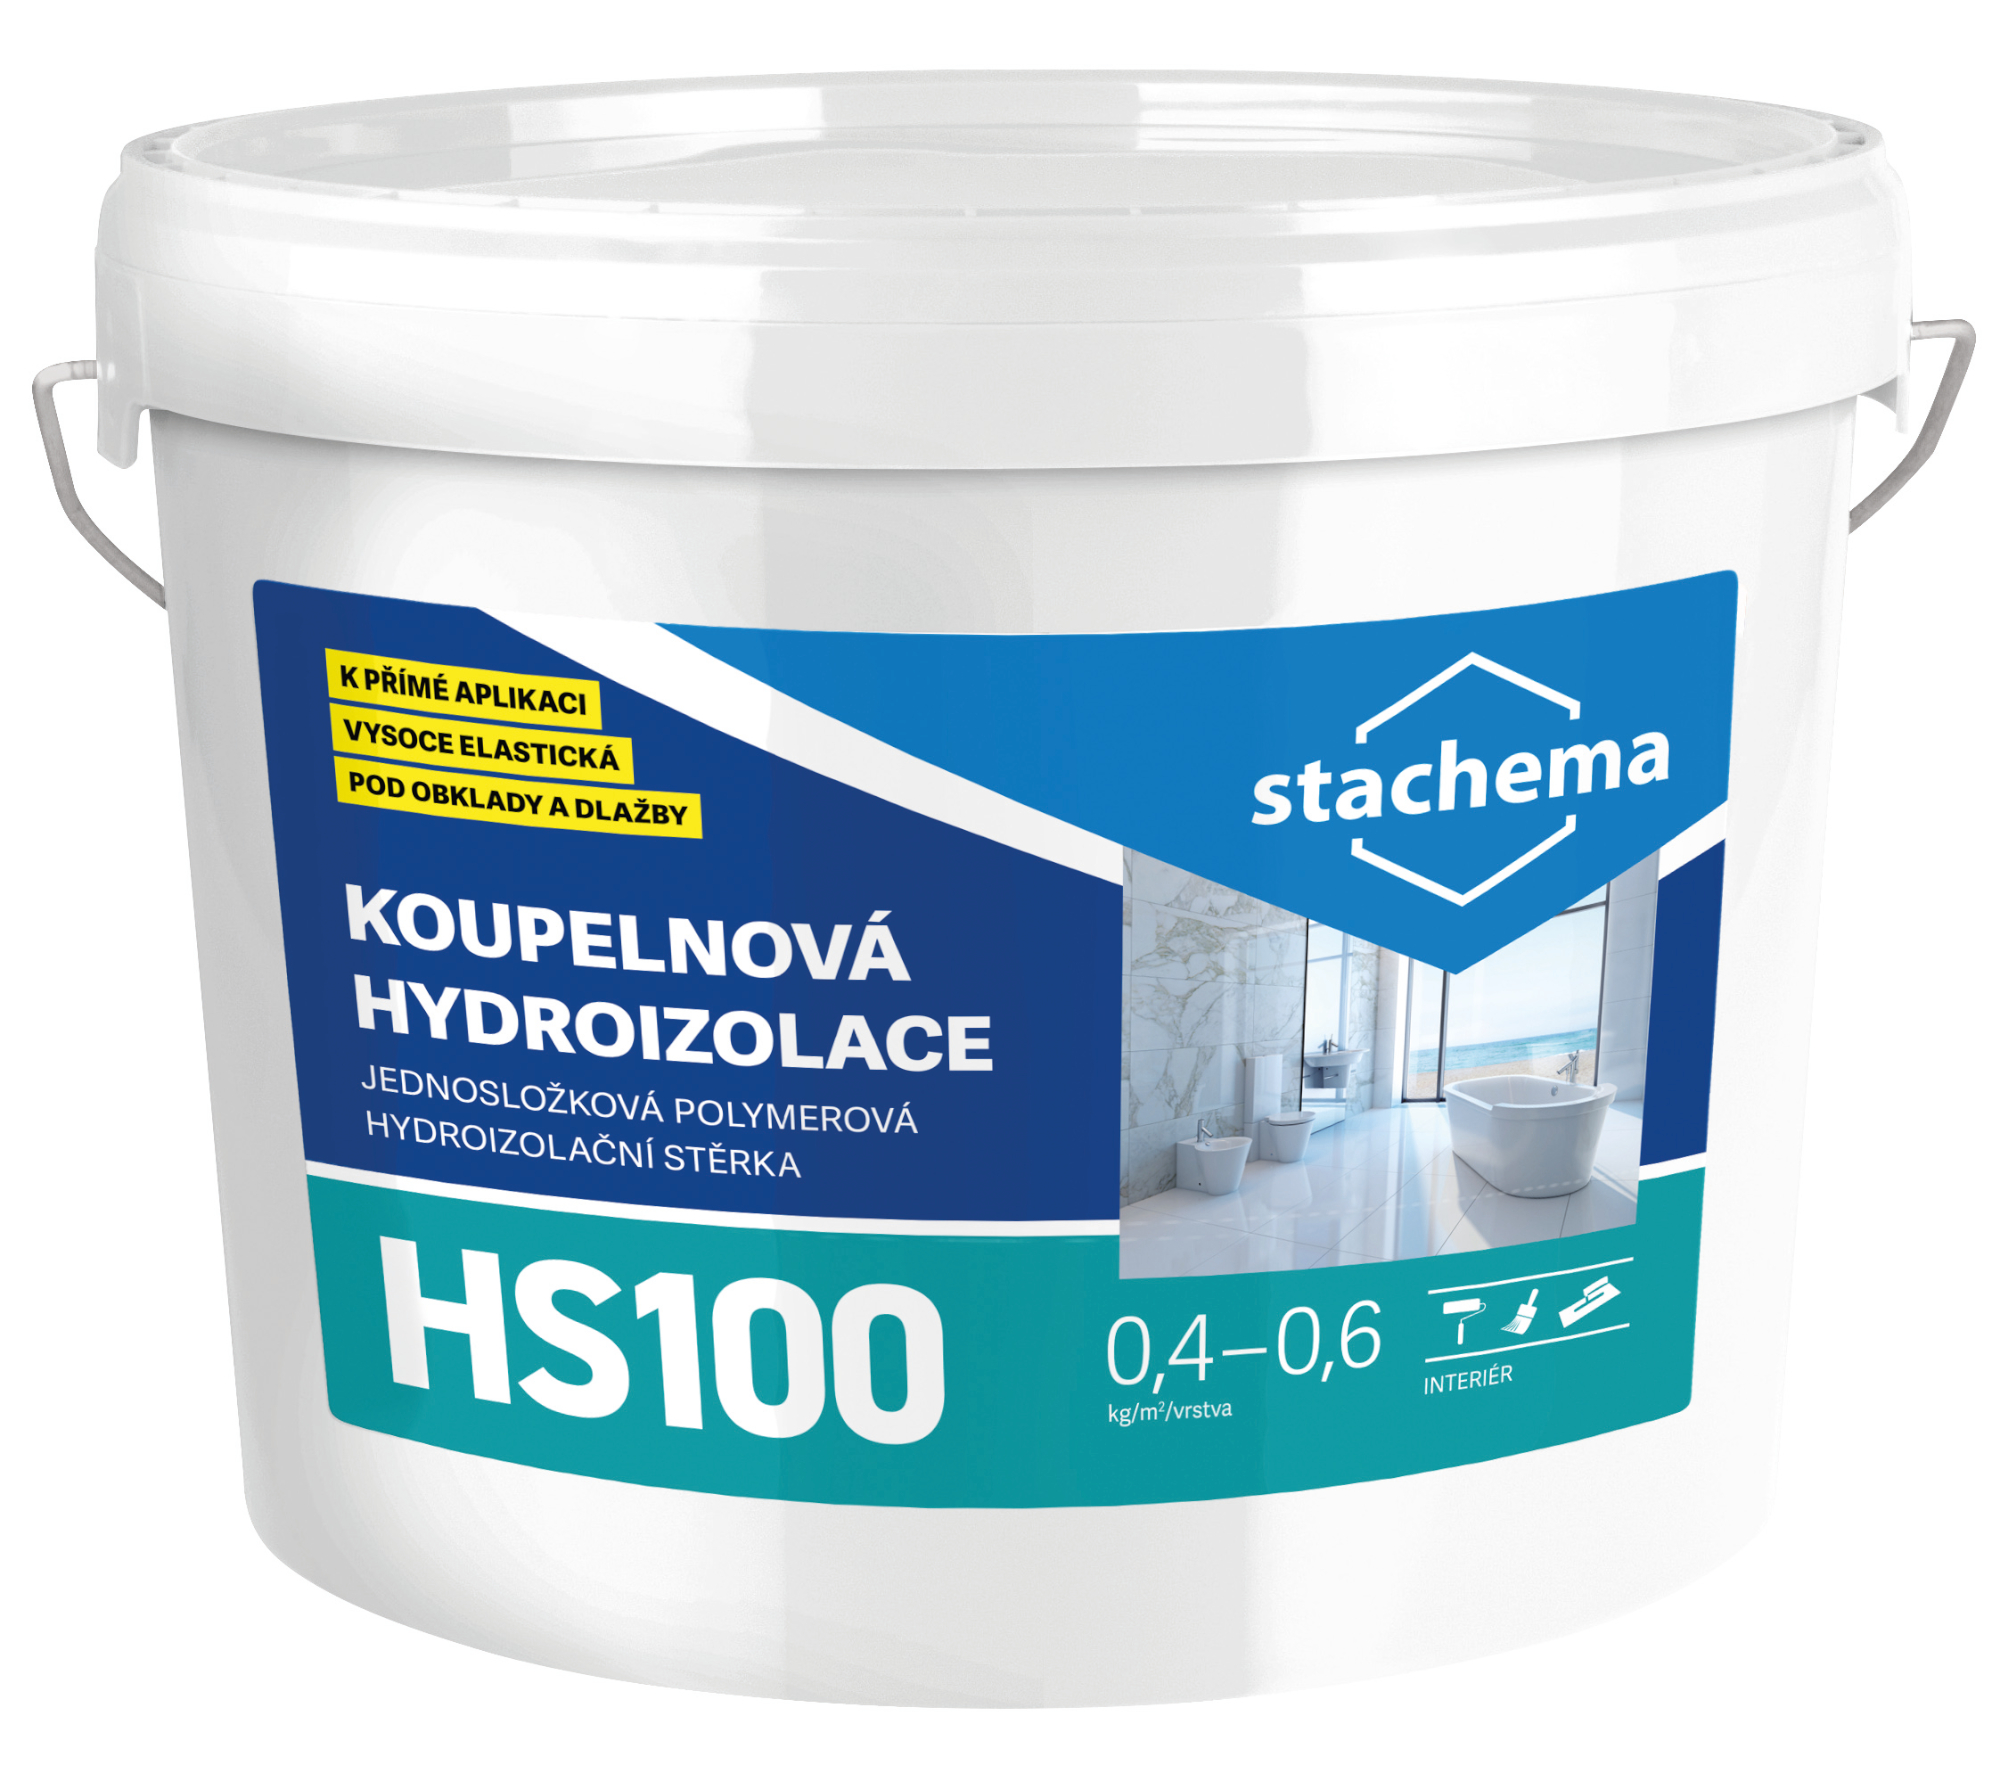 Hydroizolace koupelnová Stachema HS100 10 kg